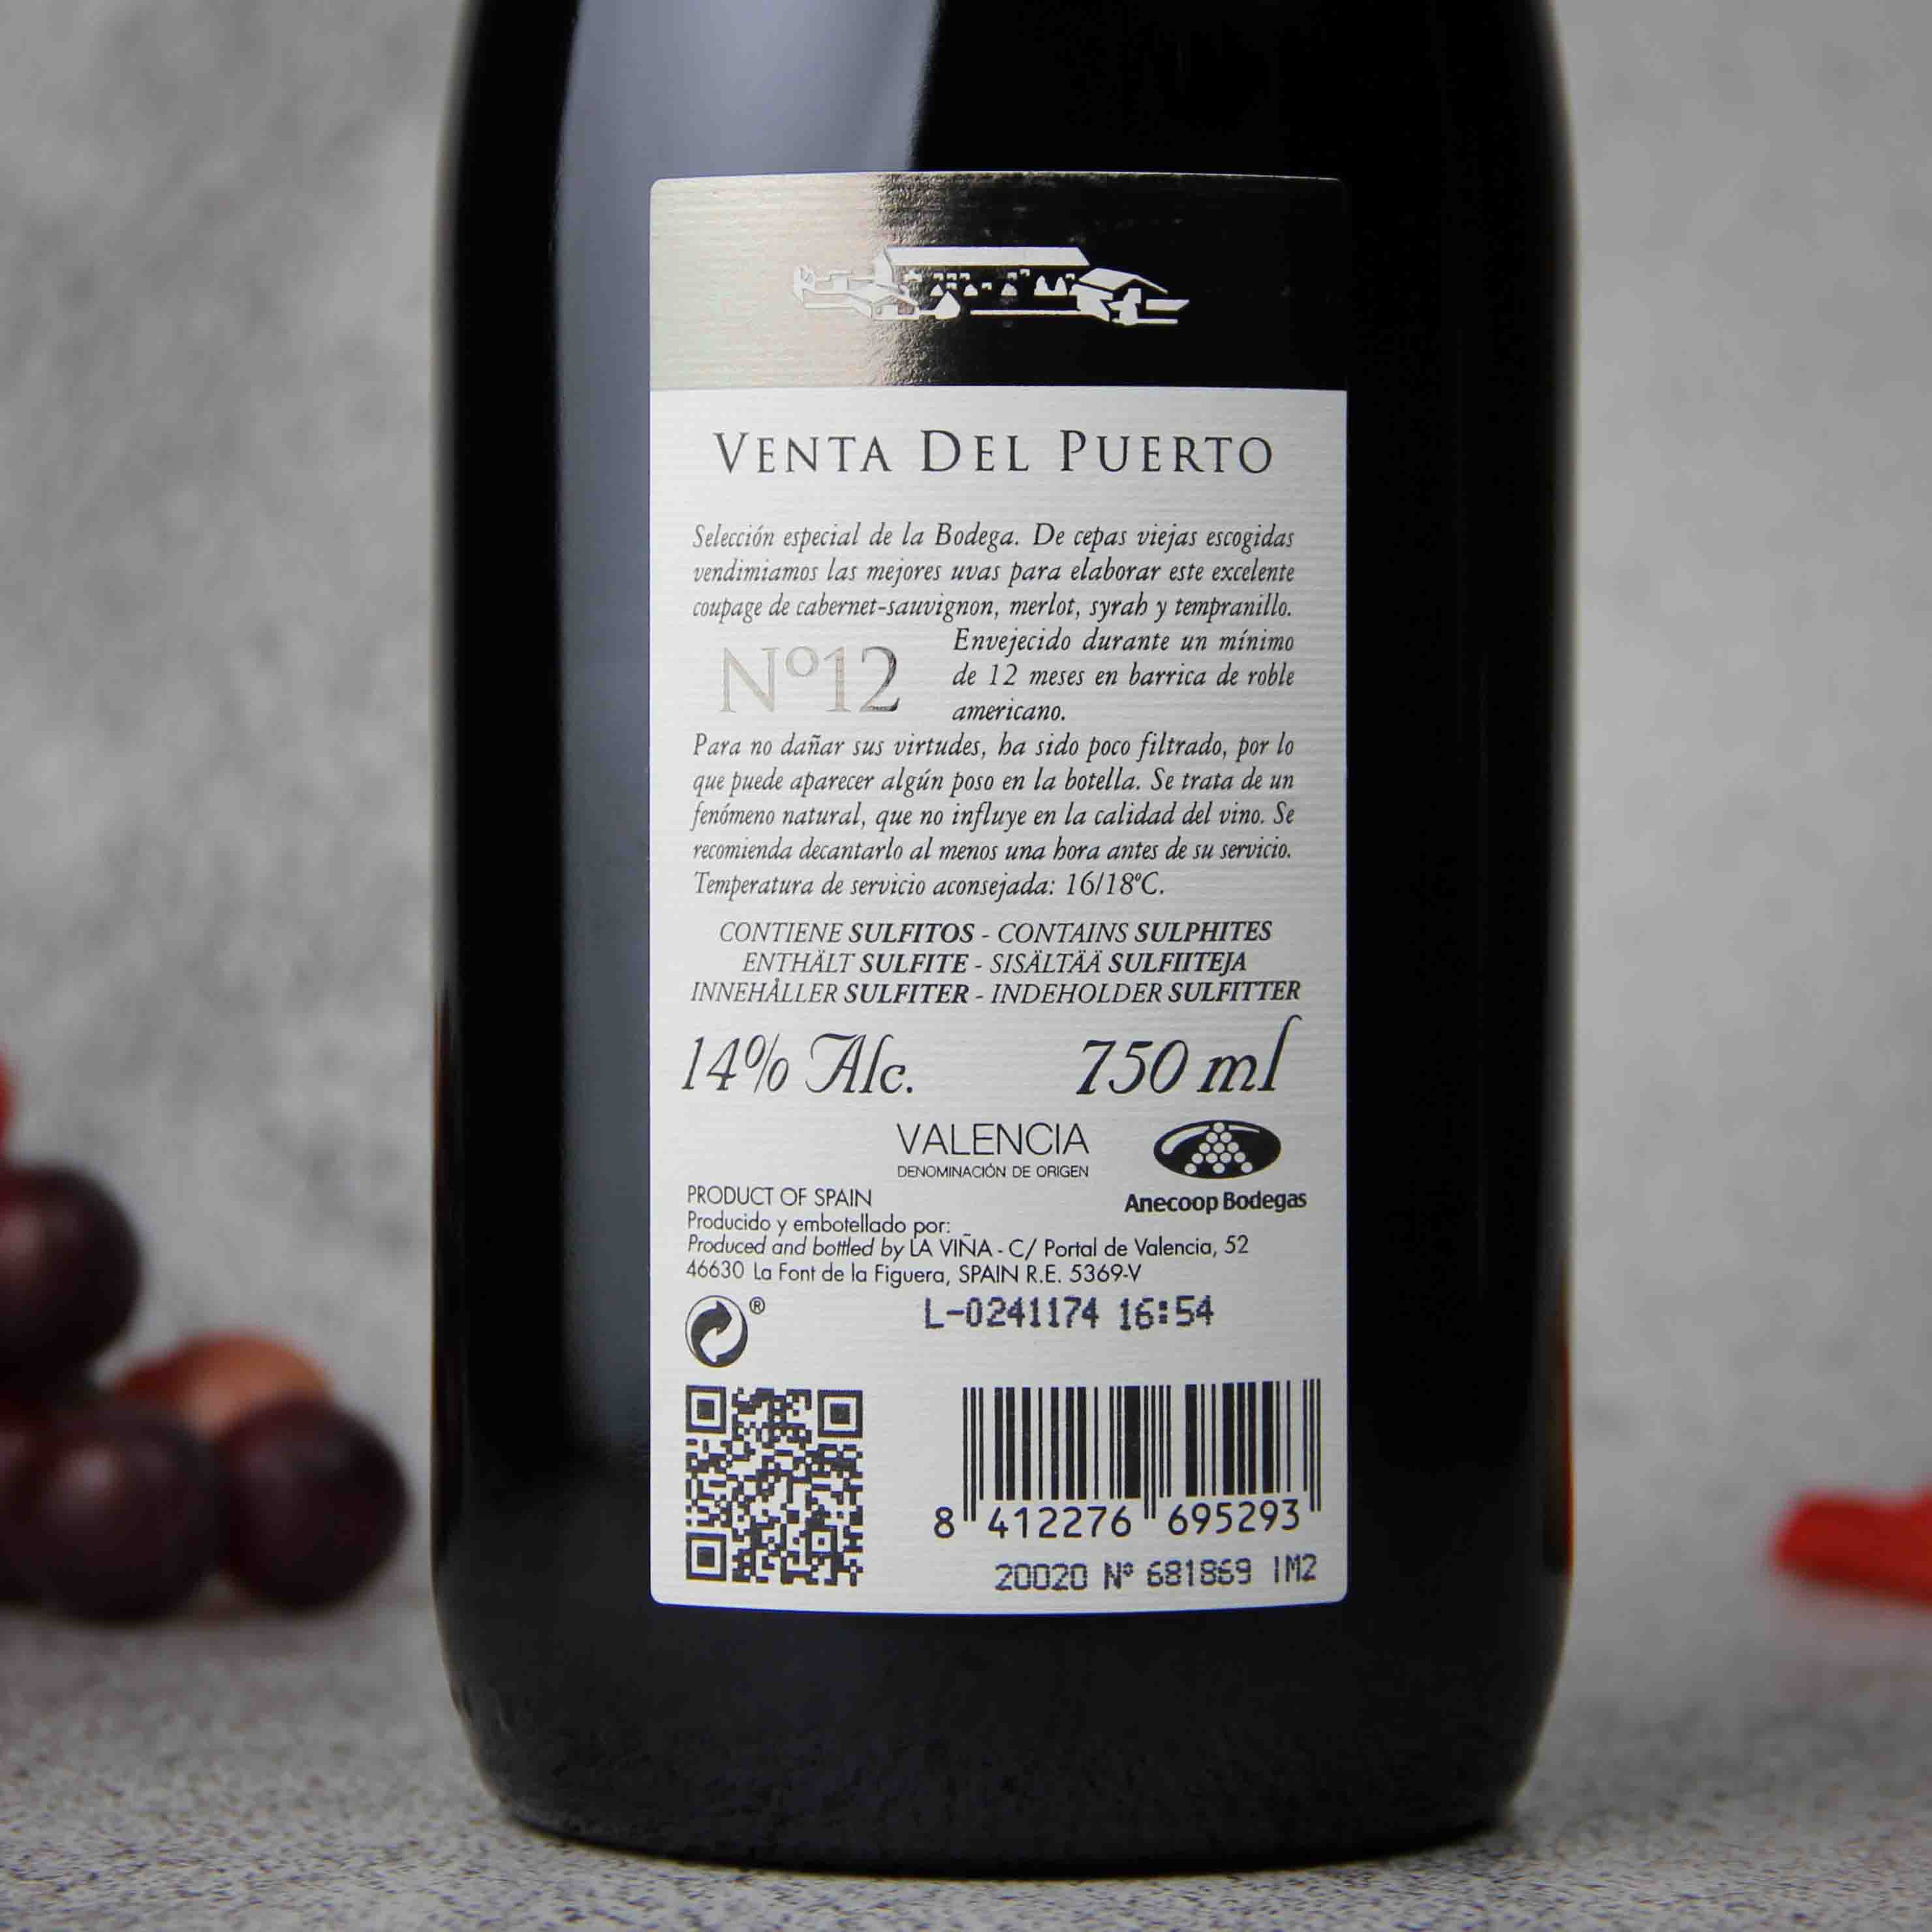 西班牙宝图庄 N12红葡萄酒